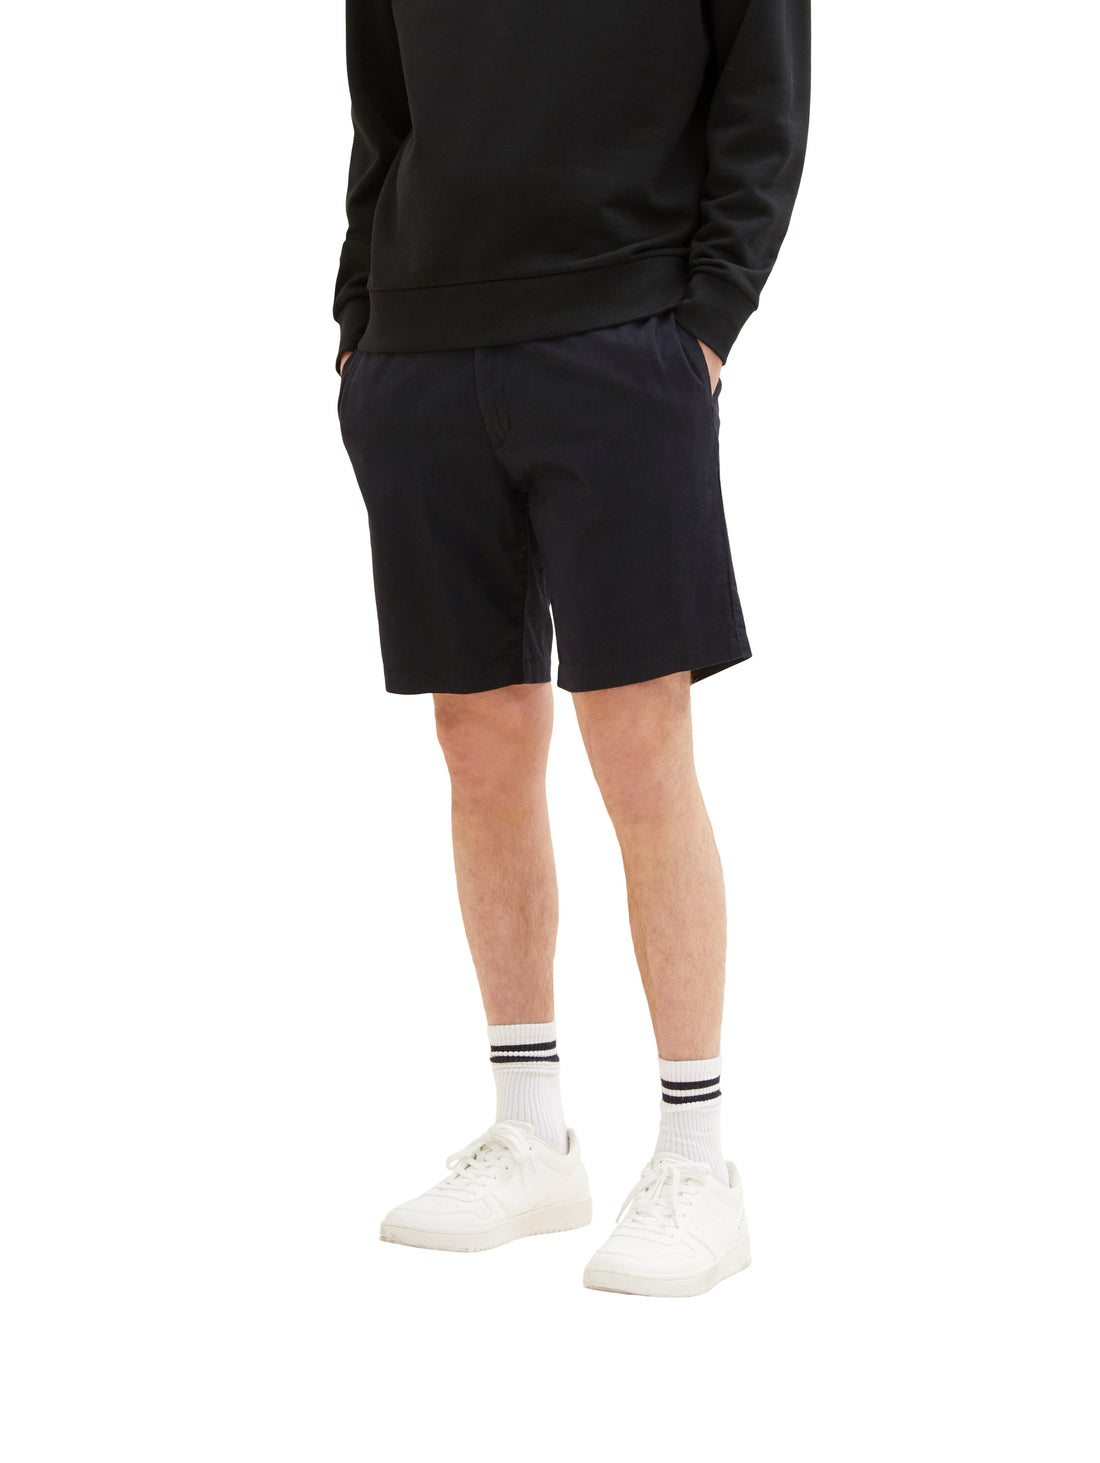 Black Chino Shorts With Drawstring